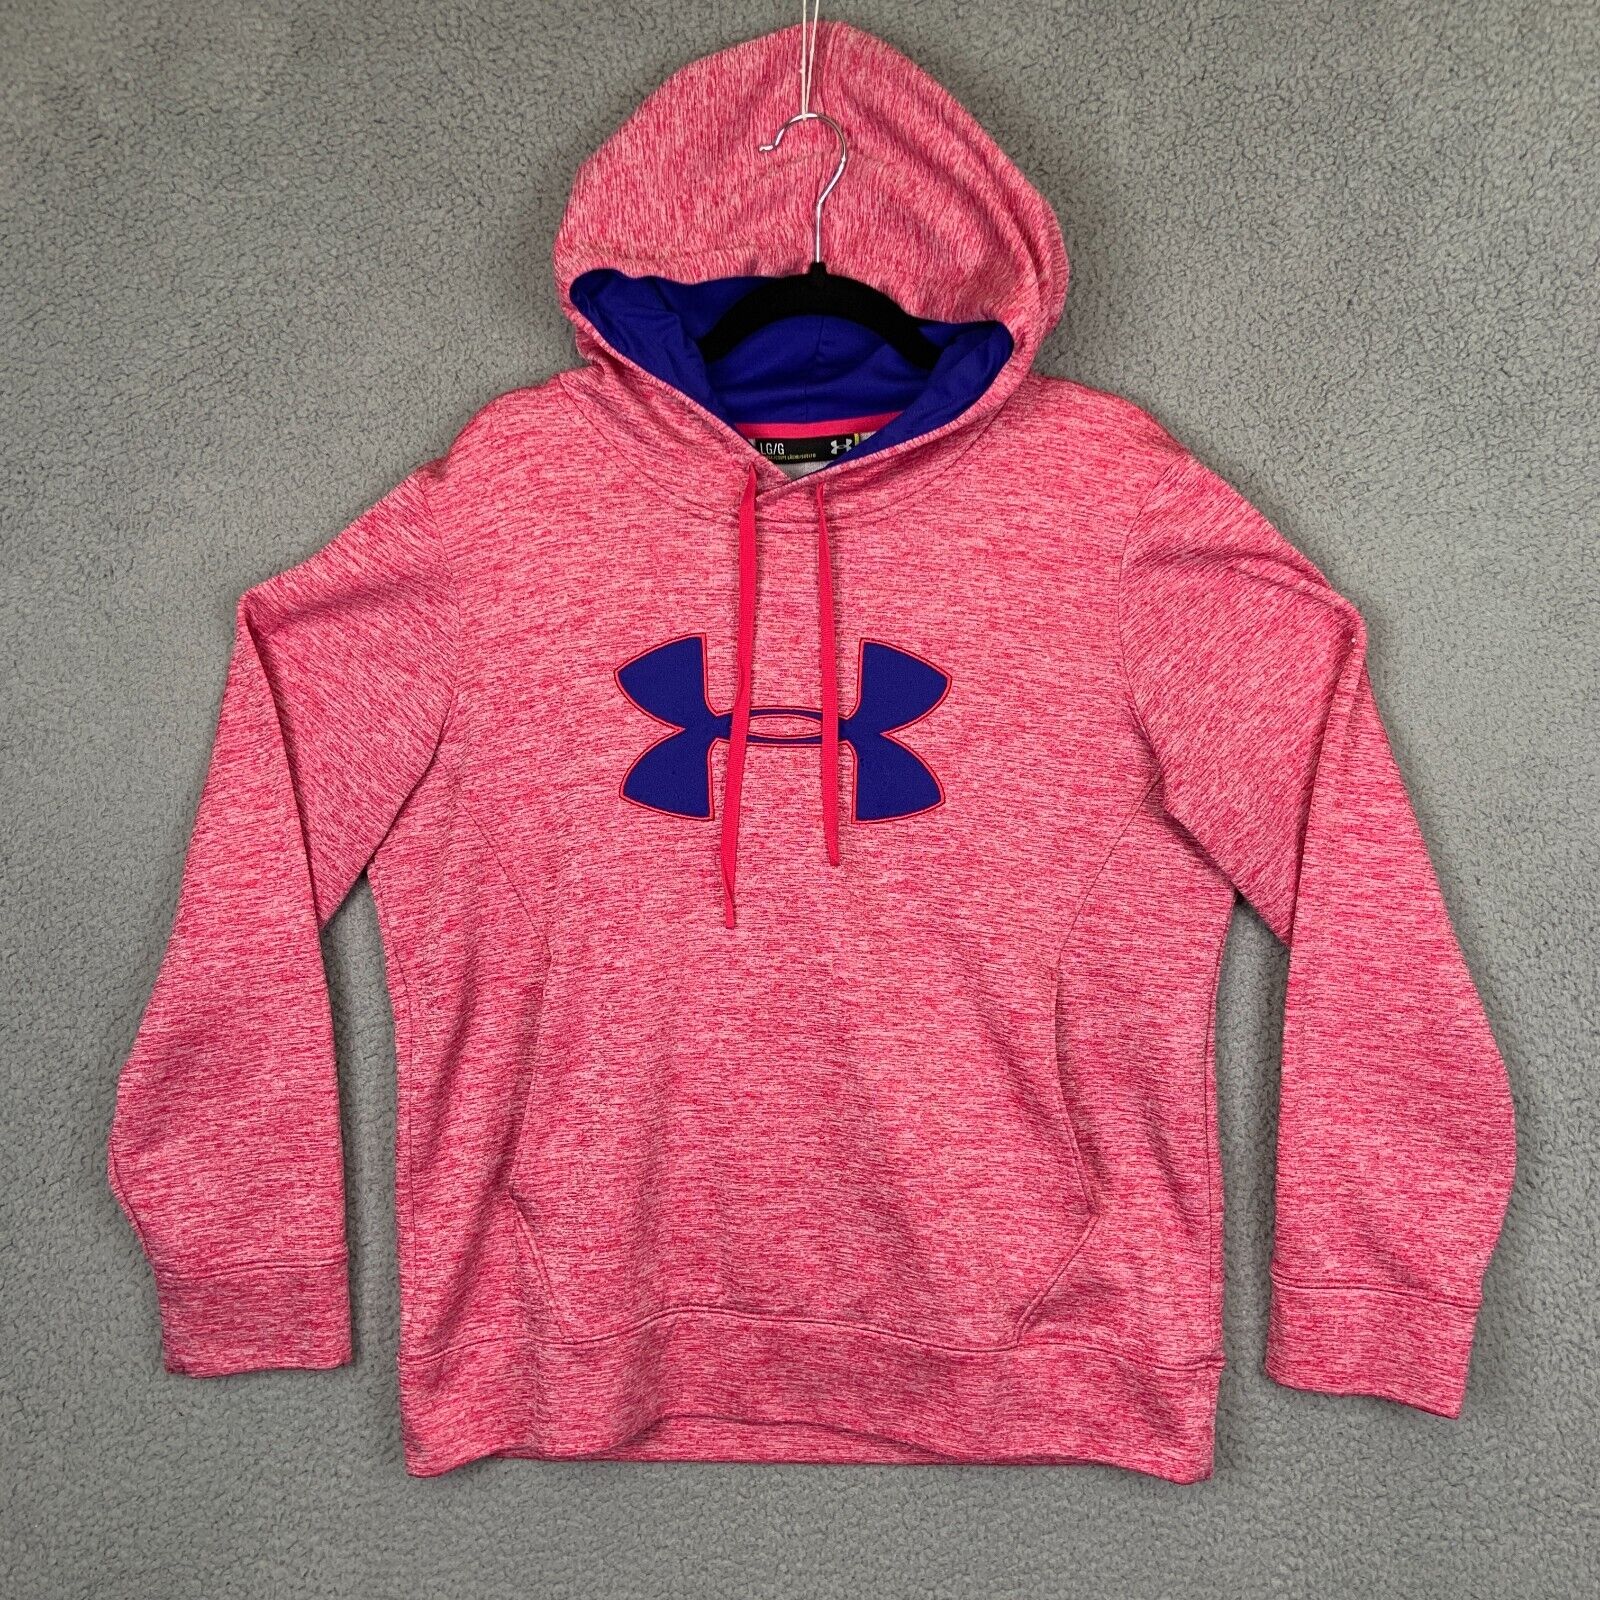 Under Armour Hoodie Womens Large Pink Blue Big Logo Hooded Sweatshirt  Athletic | eBay